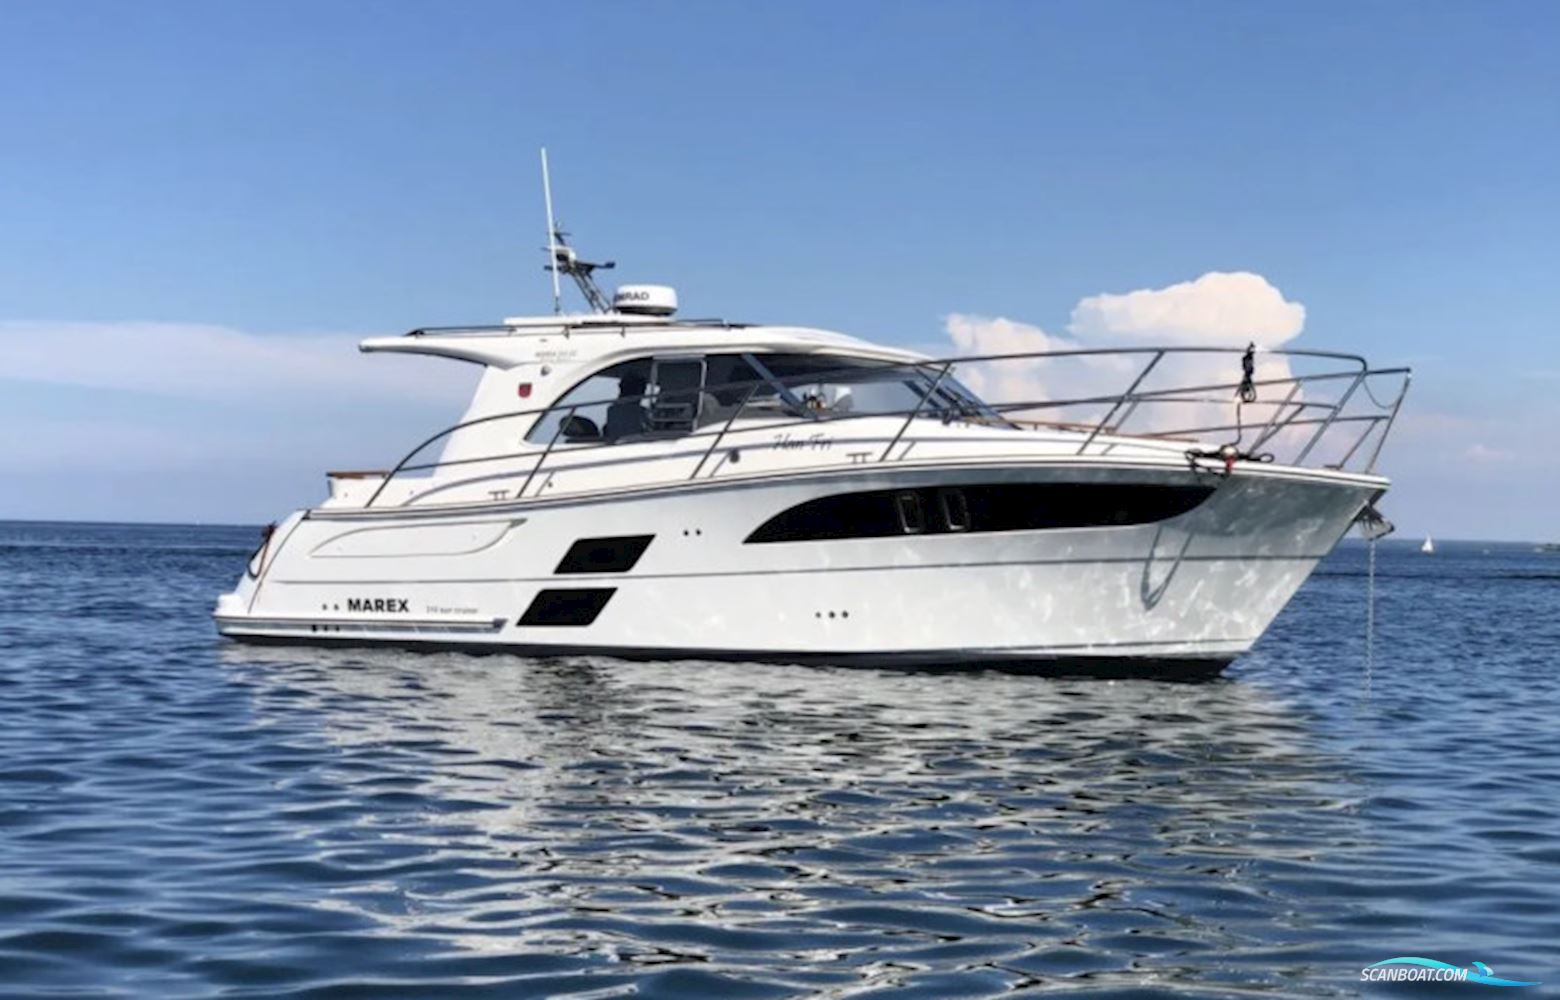 Marex 310 Sun Cruiser Motorboot 2020, mit Volvo Penta D6 380 Dpi motor, Deutschland